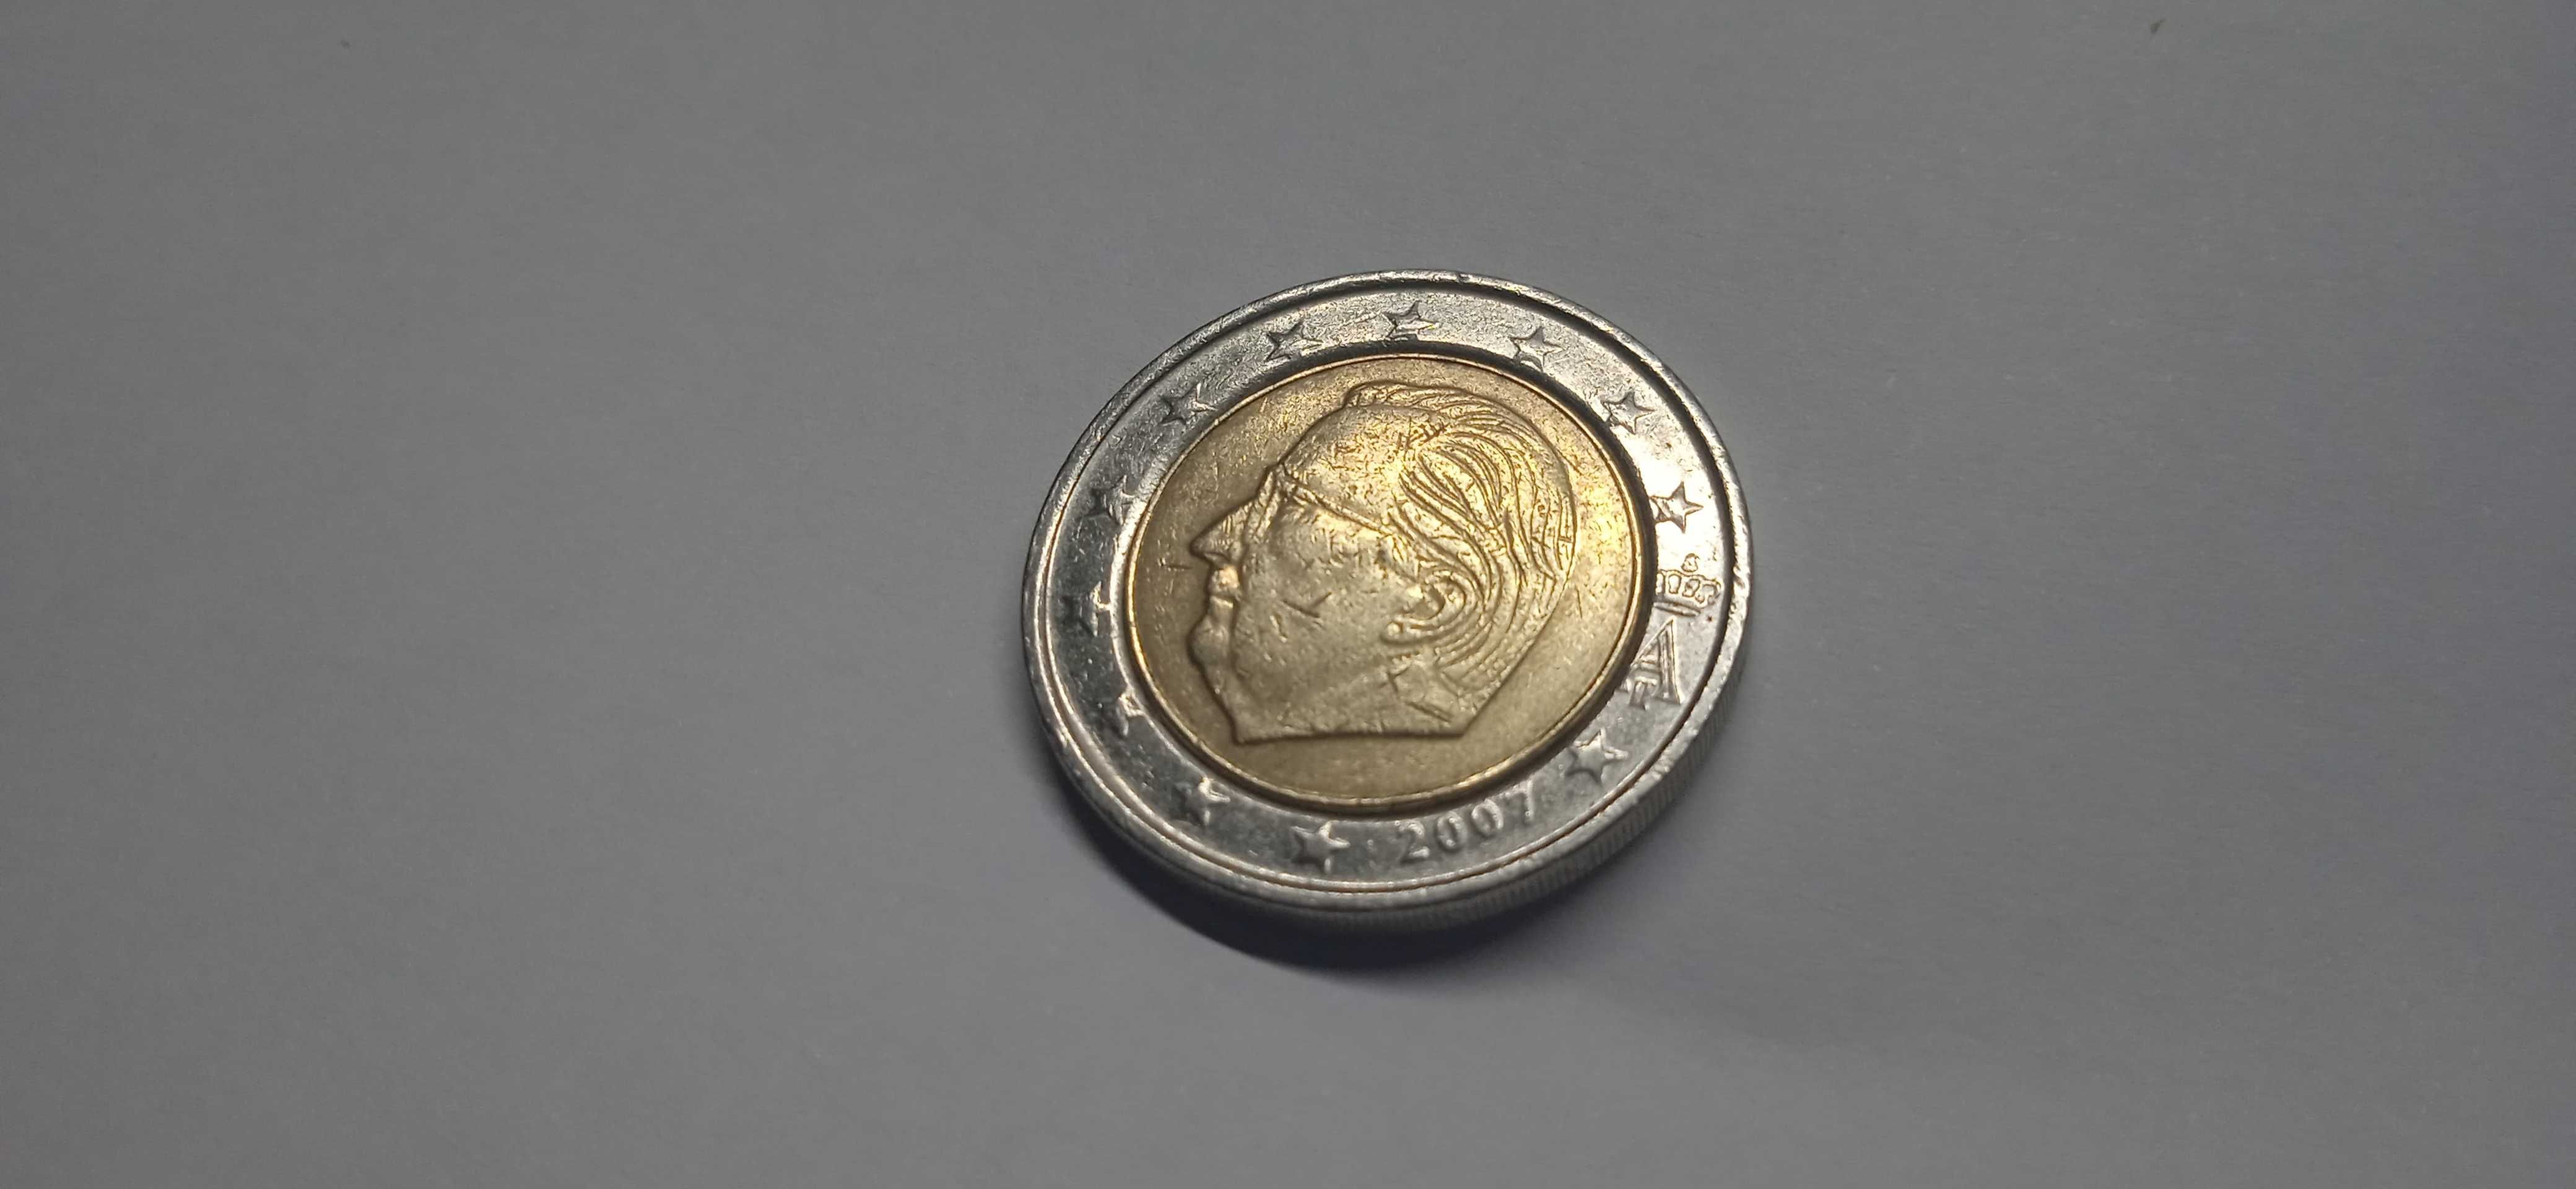 Vendo moeda 2 euros 2007 Bélgica